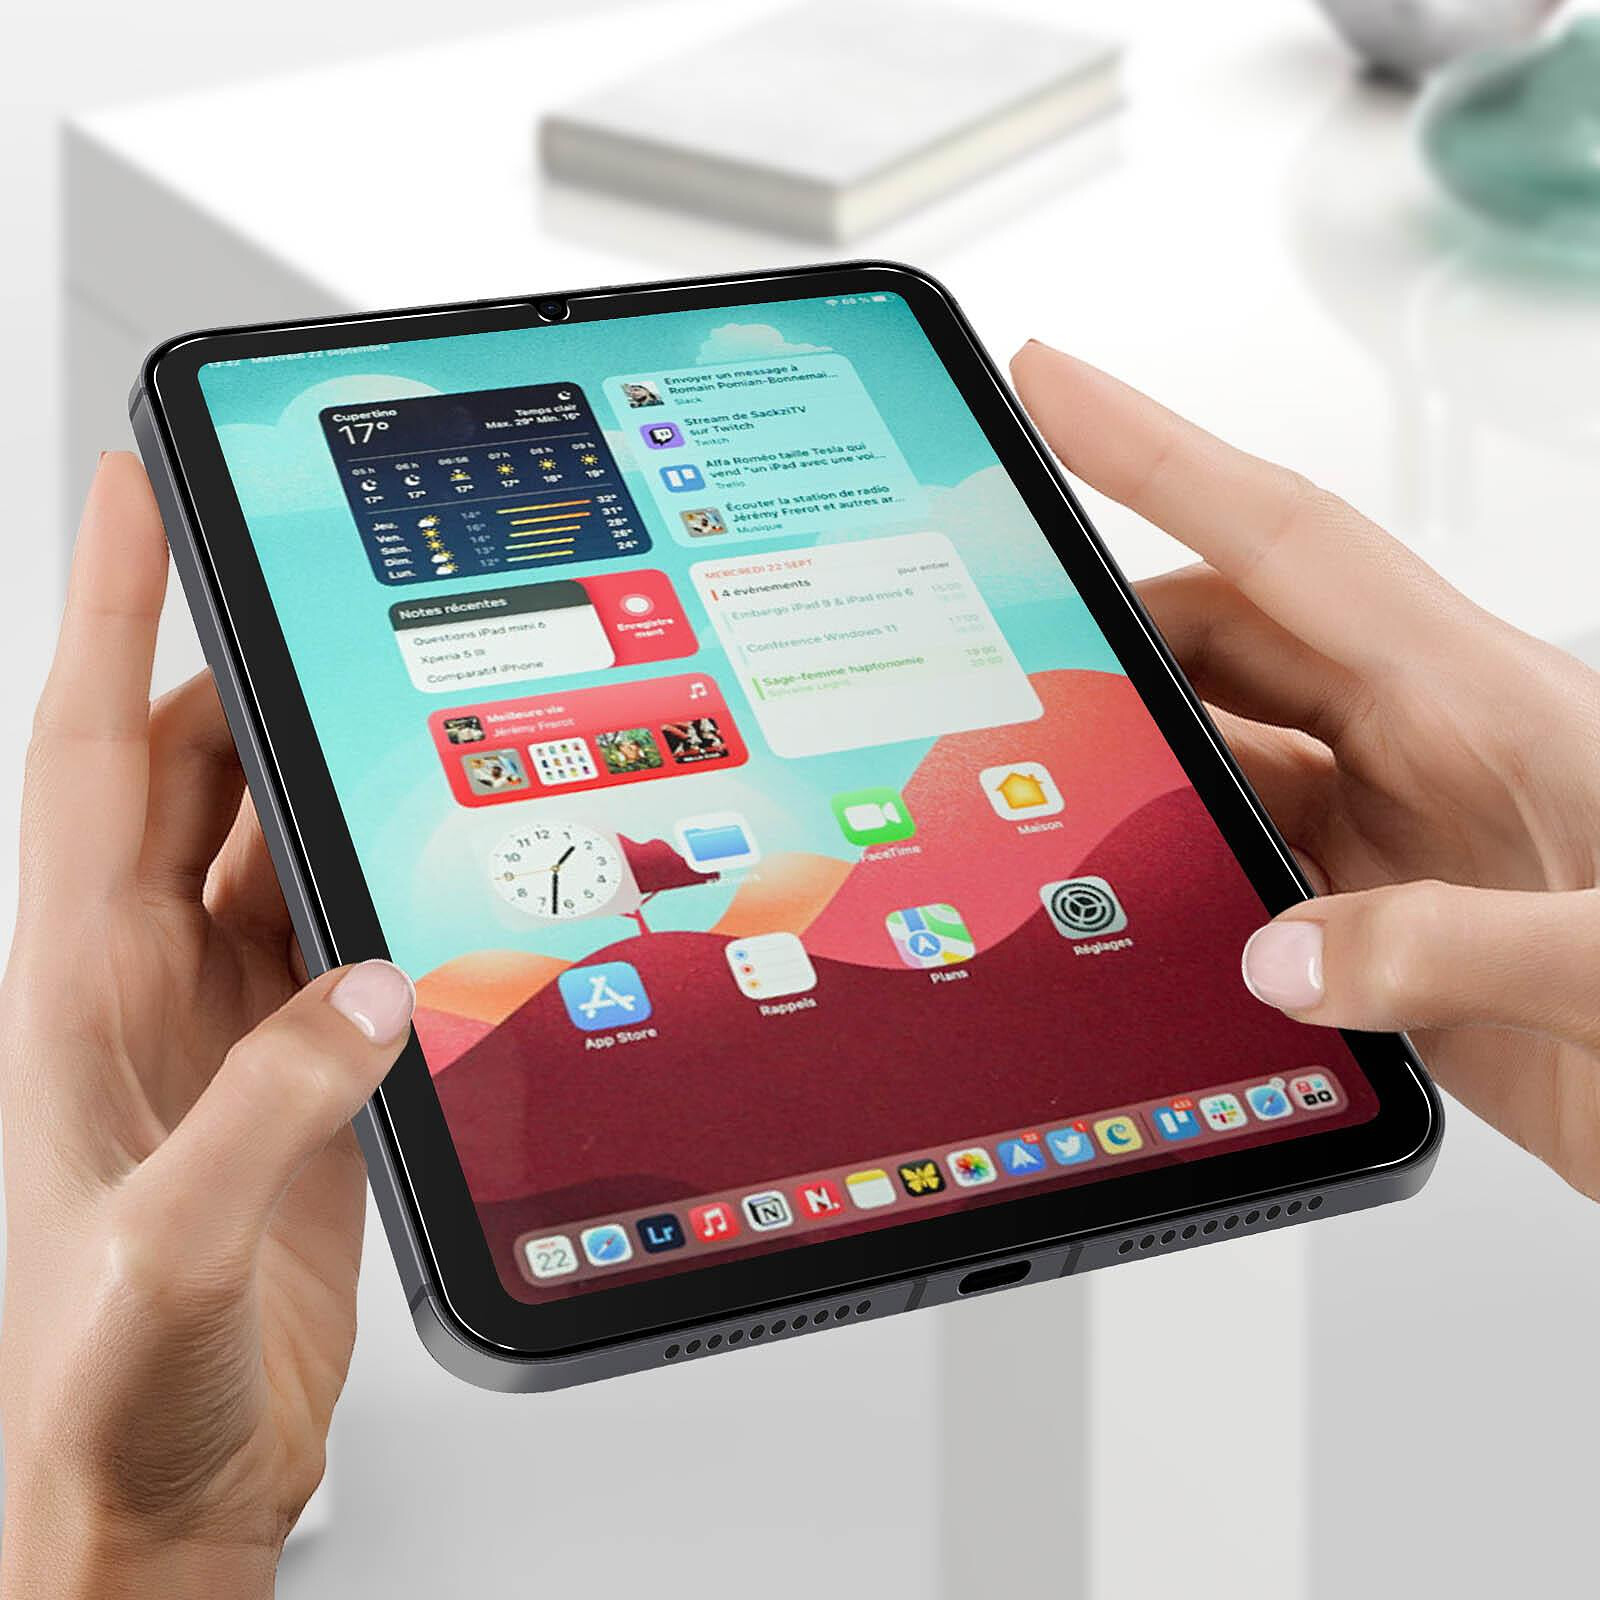 Vitres iPad 8 - 2020 10.2-inch 8ème génération Verre Trempé Protection  Ecran Apple Anti Rayures